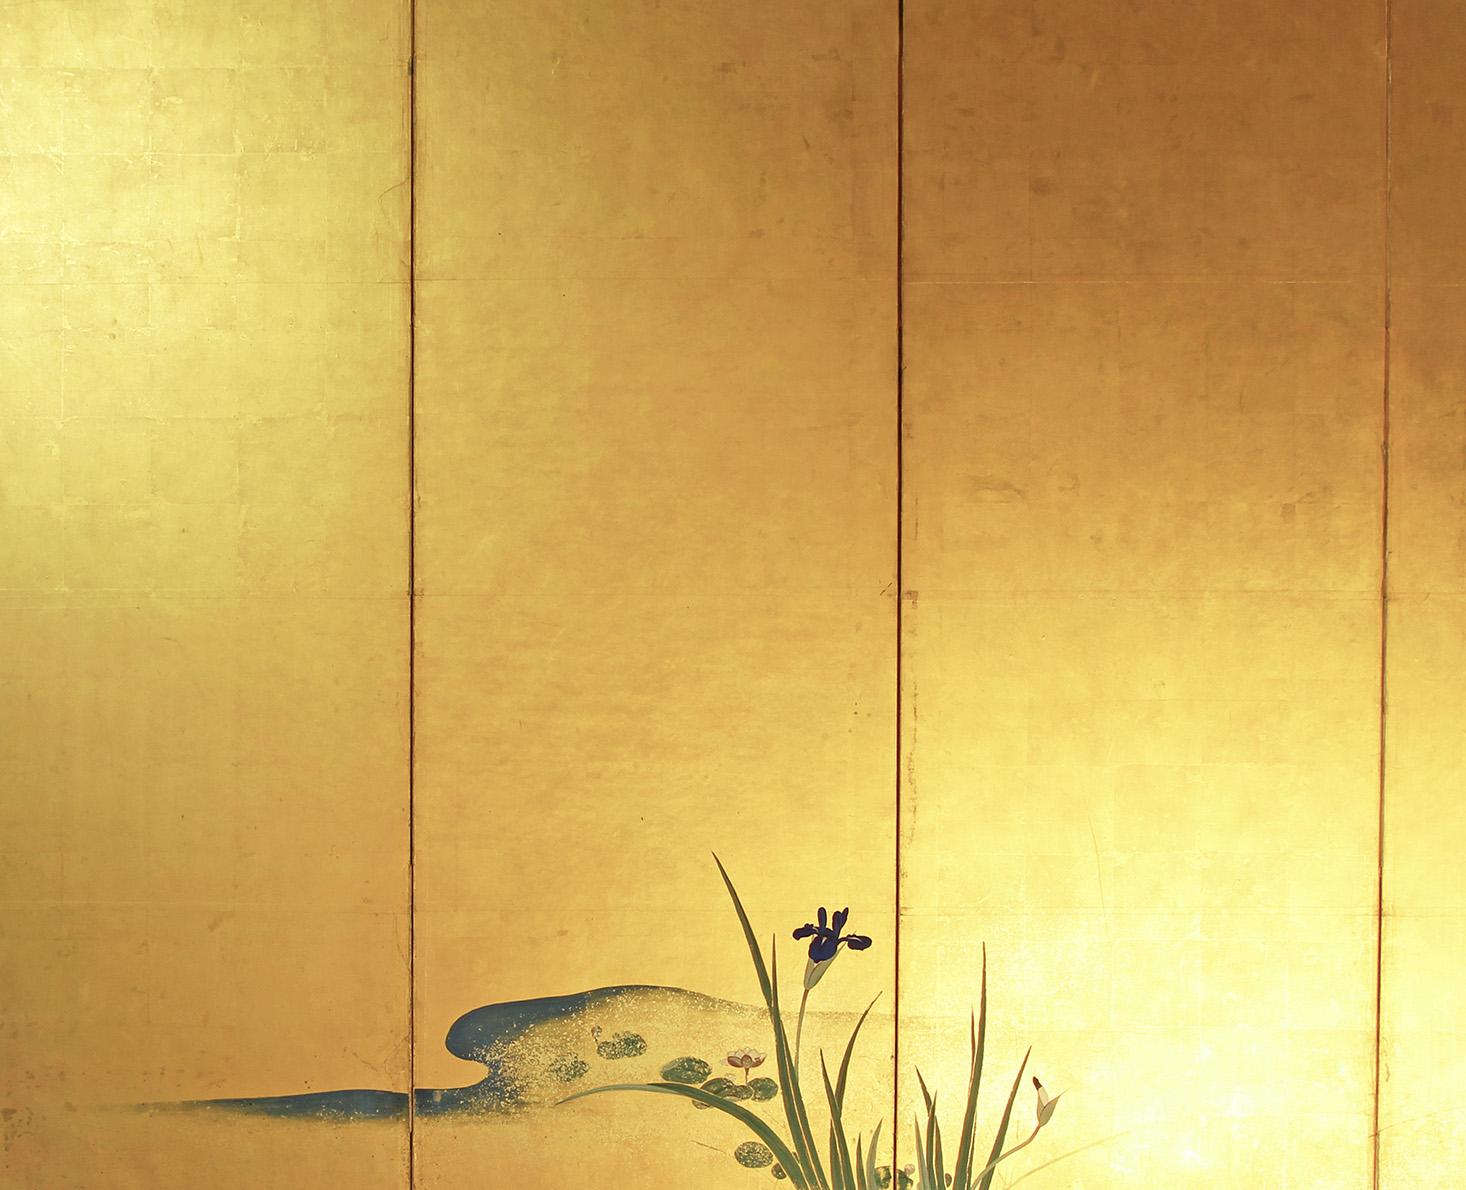 Paravento giapponese a sei pannelli , opera di un pittore della prima metà del 19° secolo, di scuola Rinpa.
Sei pannelli dipinti con inchiostro su foglia oro e 